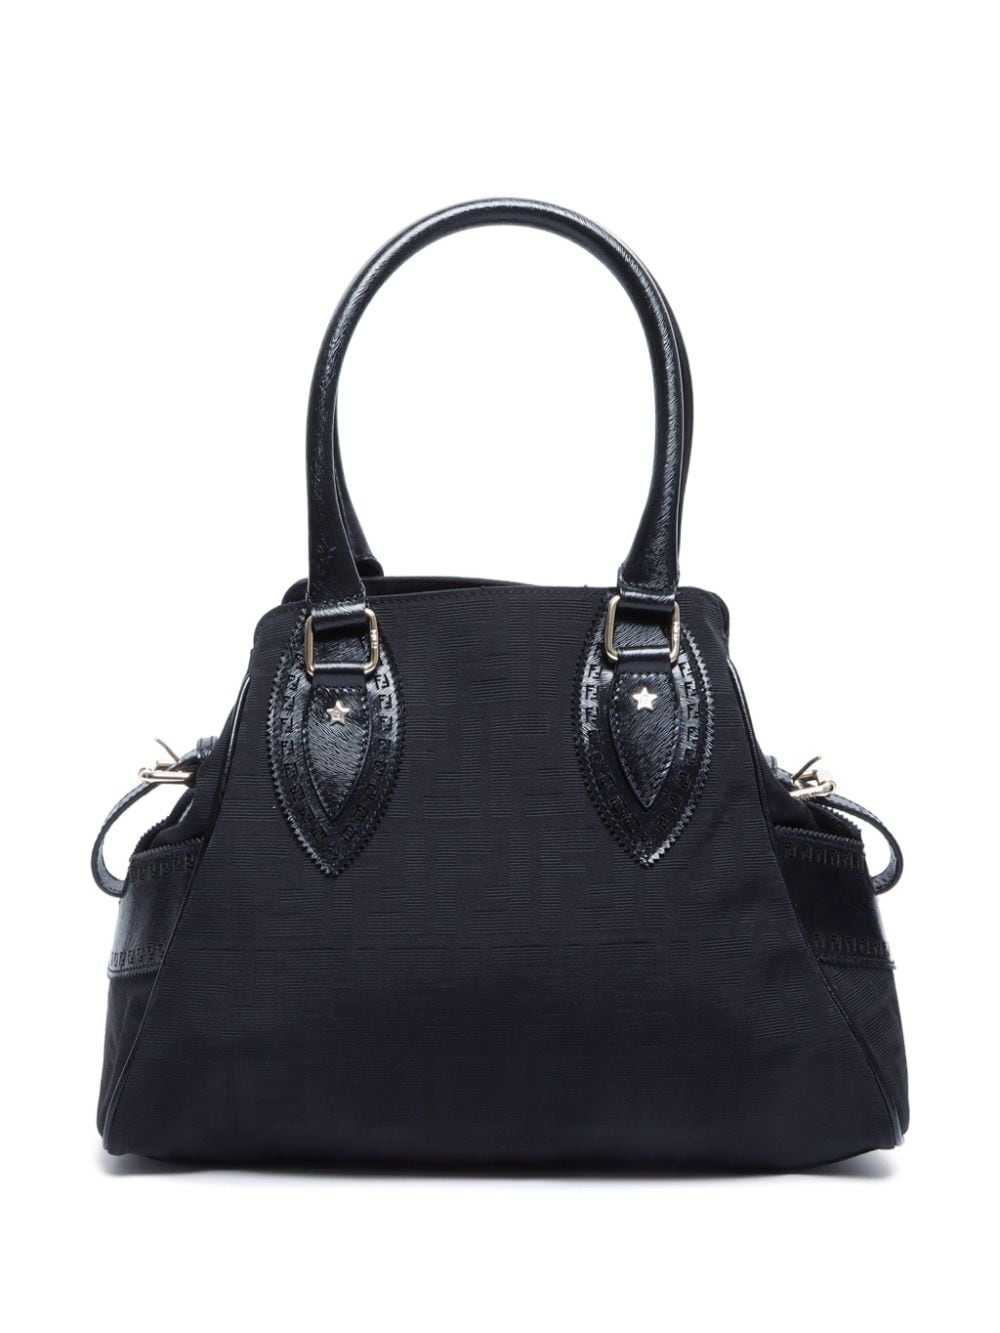 Fendi Pre-Owned Etniko Zucca handbag - Black - image 2